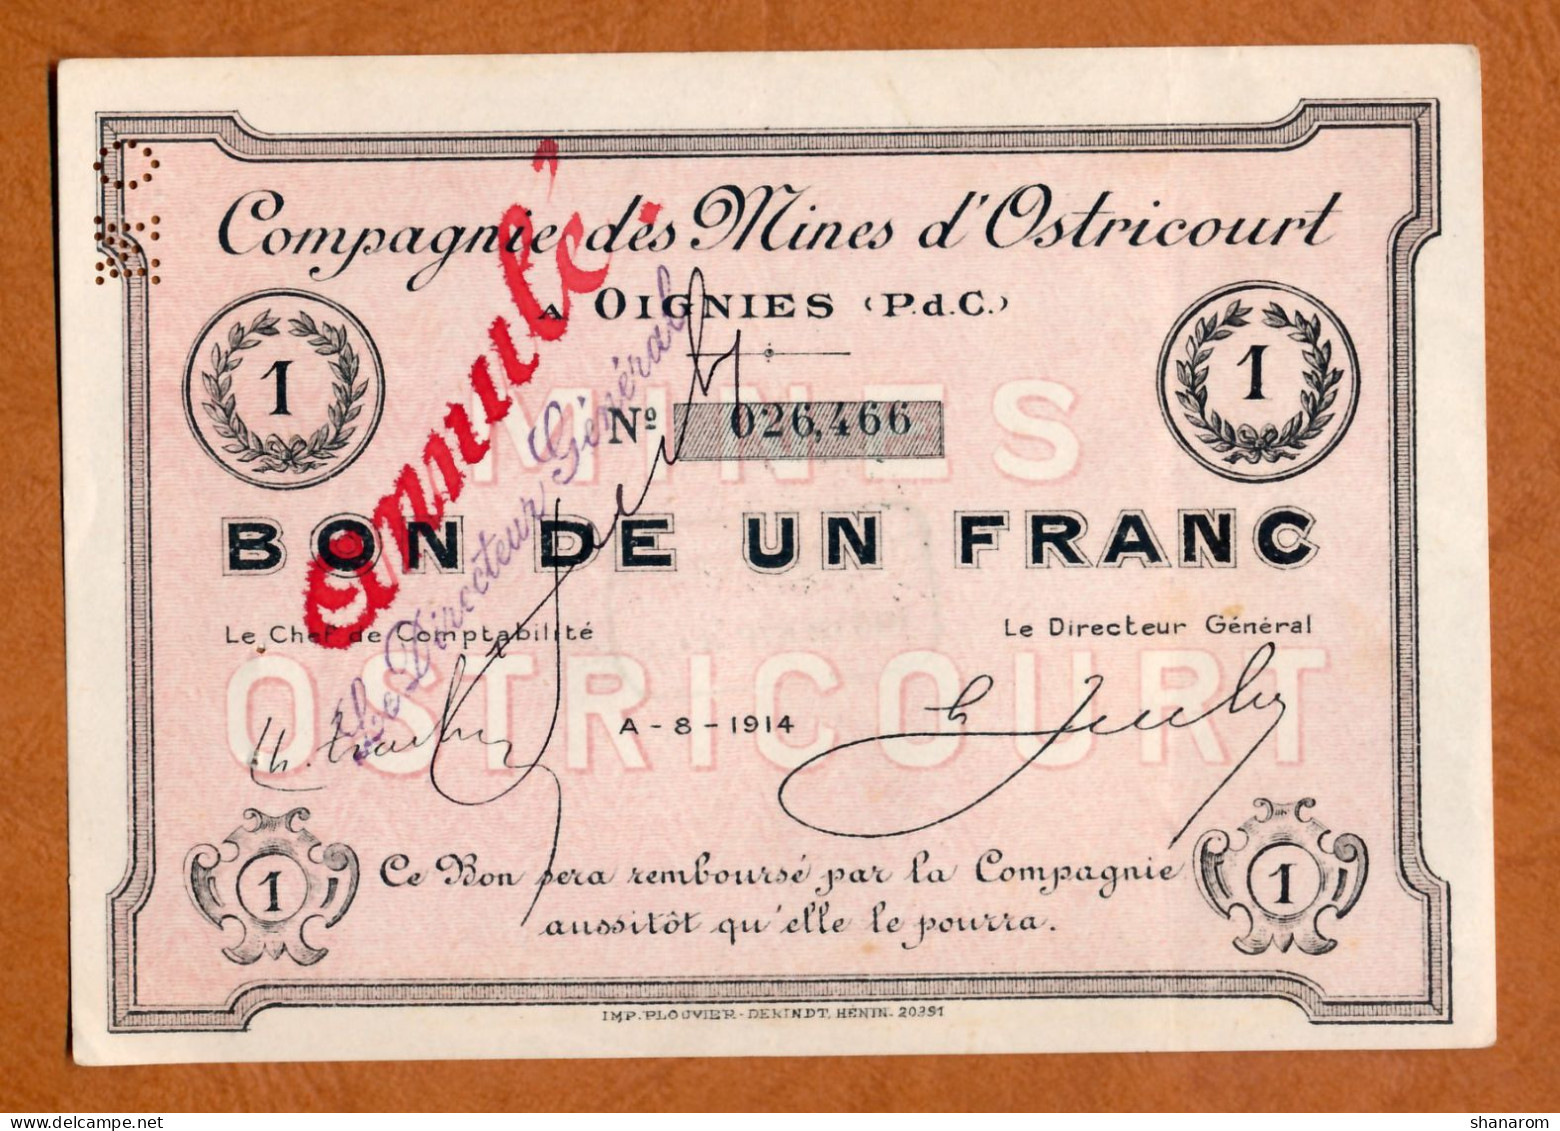 1914-1918 // Commune De OIGNIES (Pas De Calais 62) // Août 1914 // MINES D'OSTRICOURT // Bon De Un Franc // Annulé - Notgeld